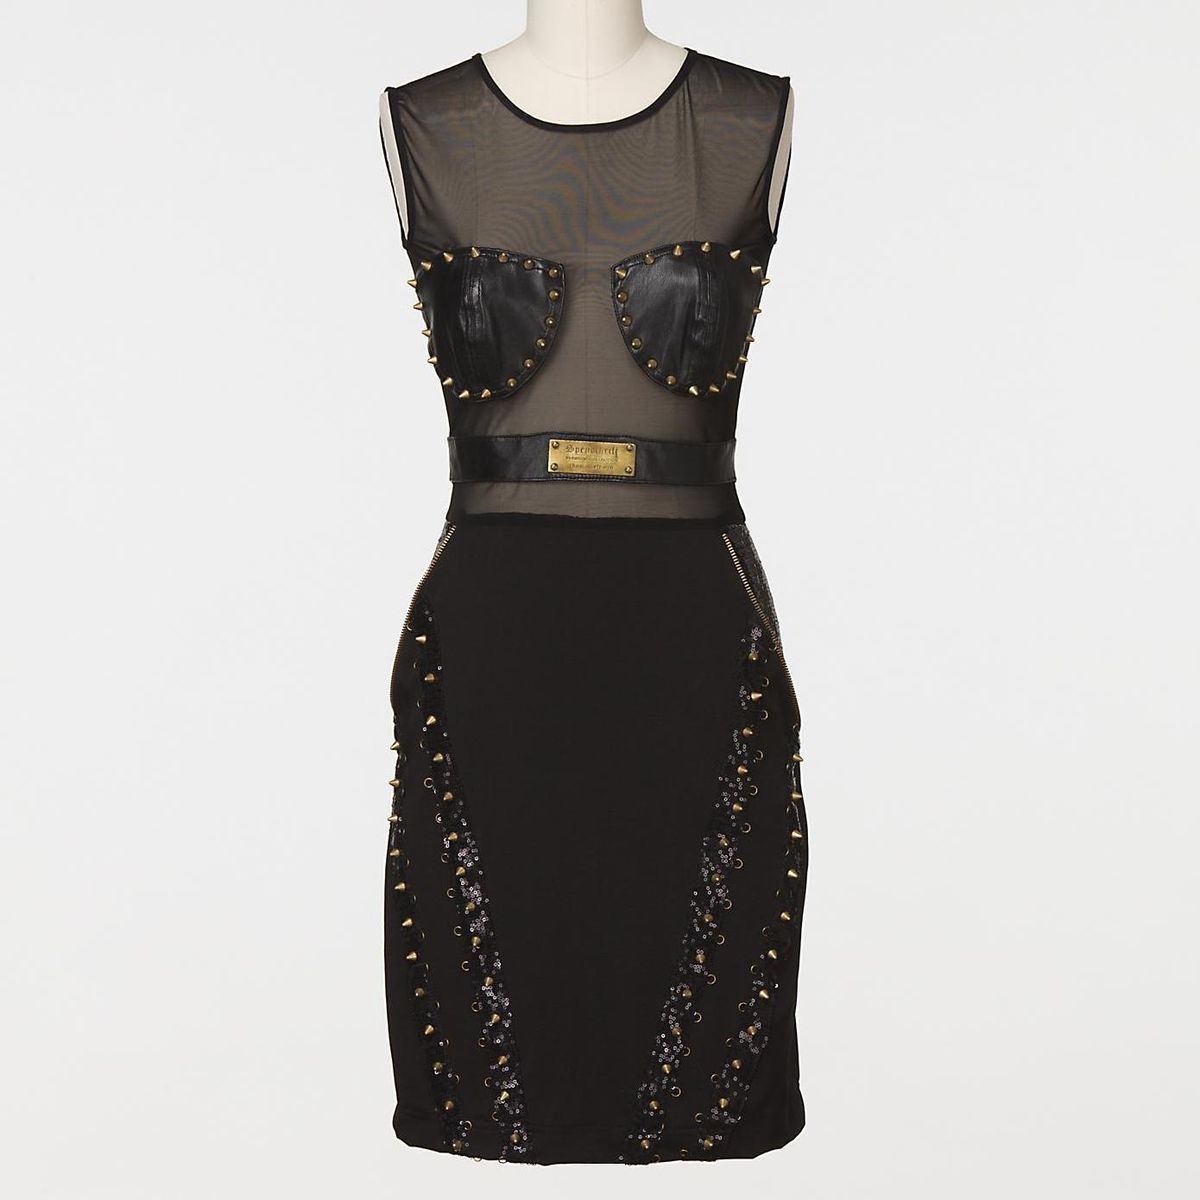 Amber Rose Spendthrift Black Sheer Mesh Panel Studded Dress Size M 